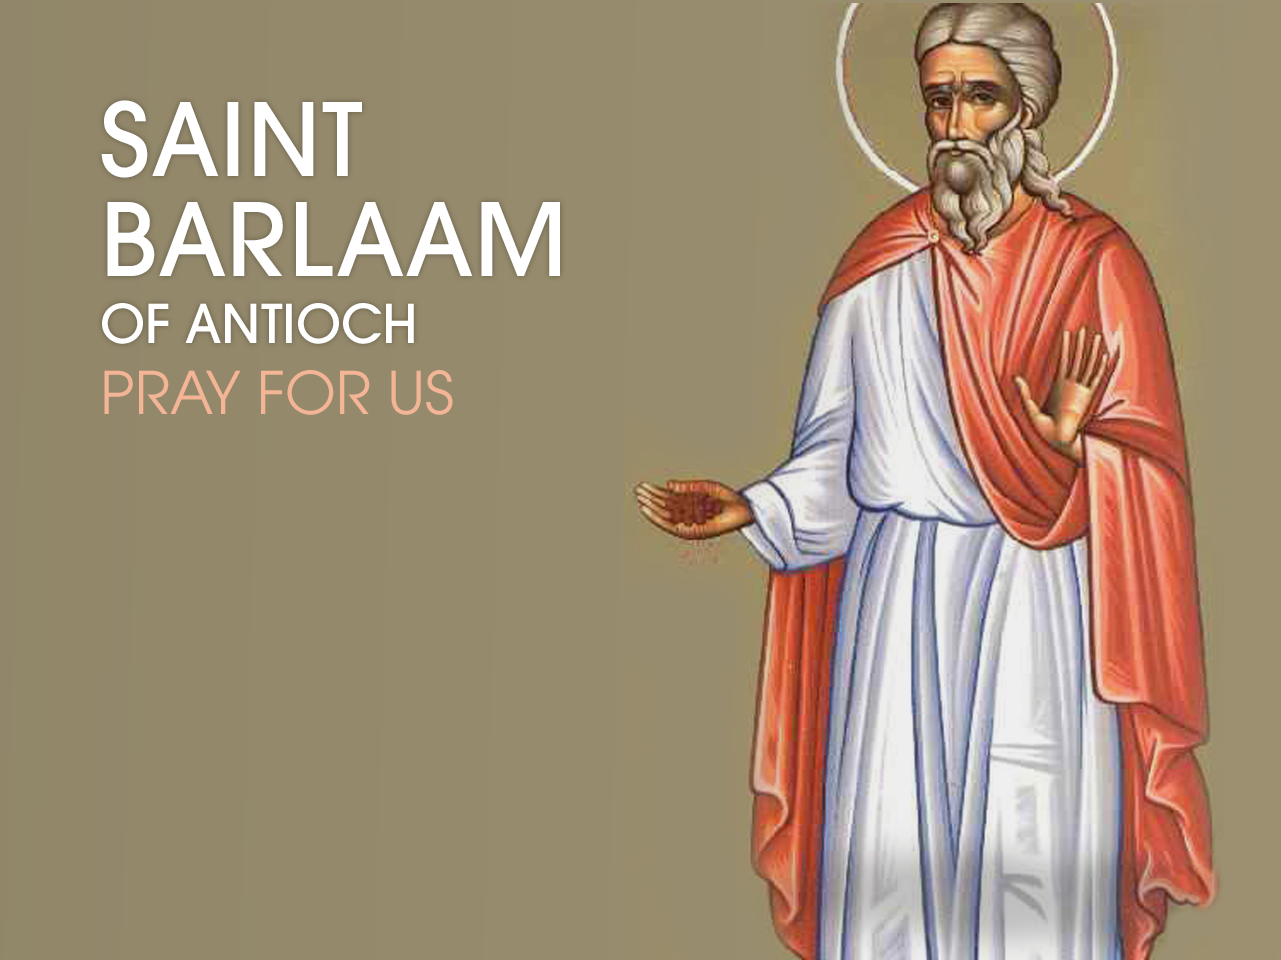 St. Barlaam of Antioch